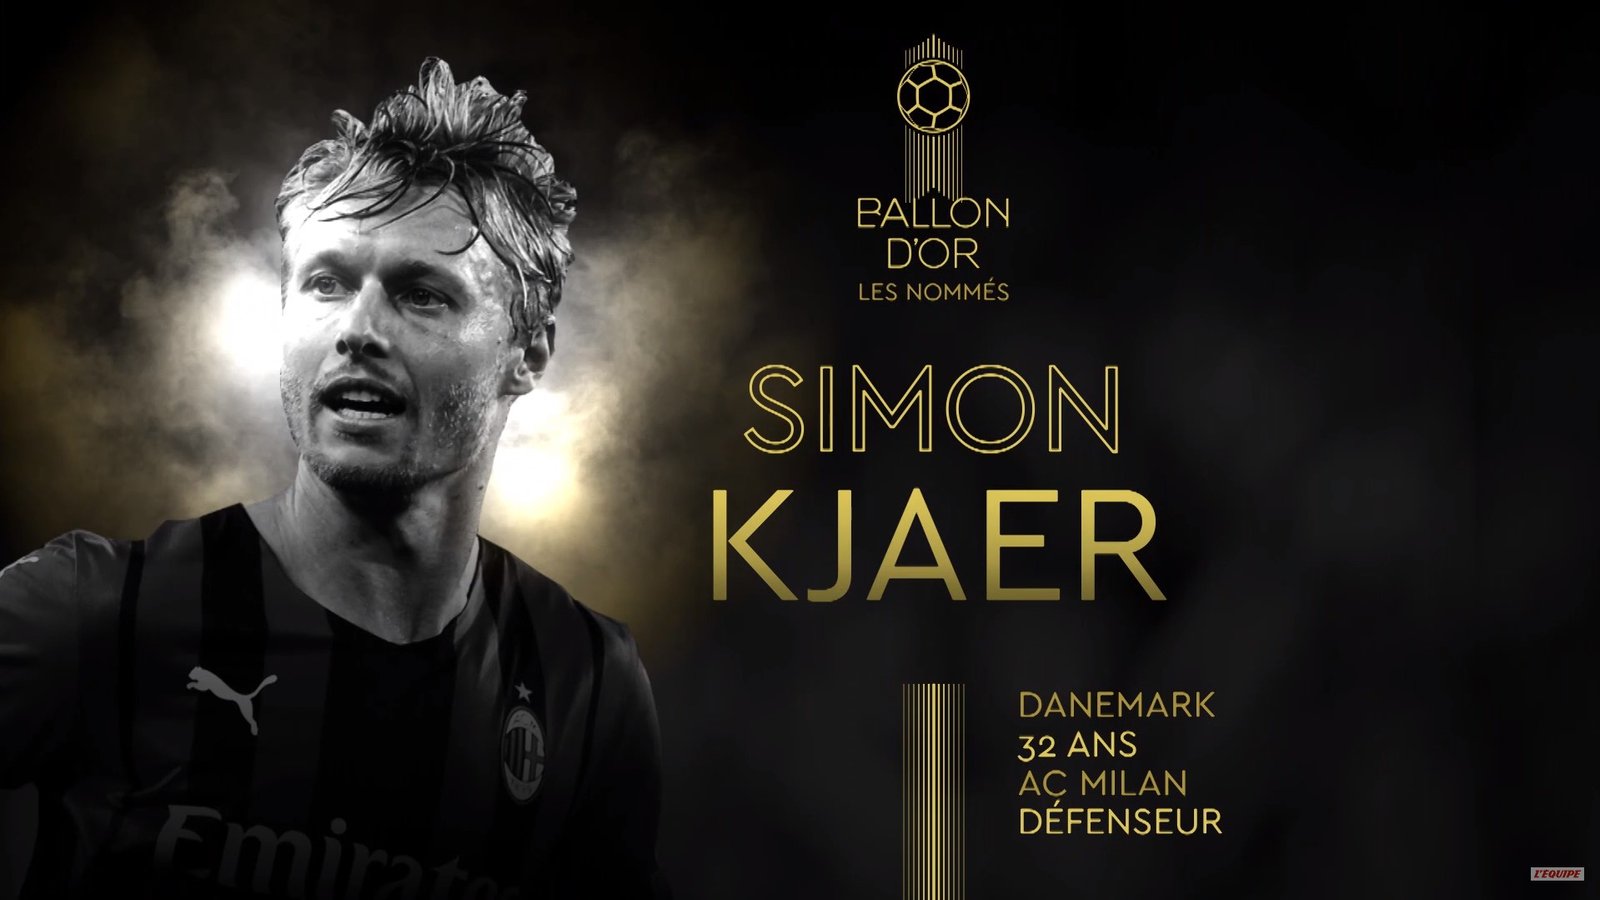 Simon Kjaer Ballon d'Or